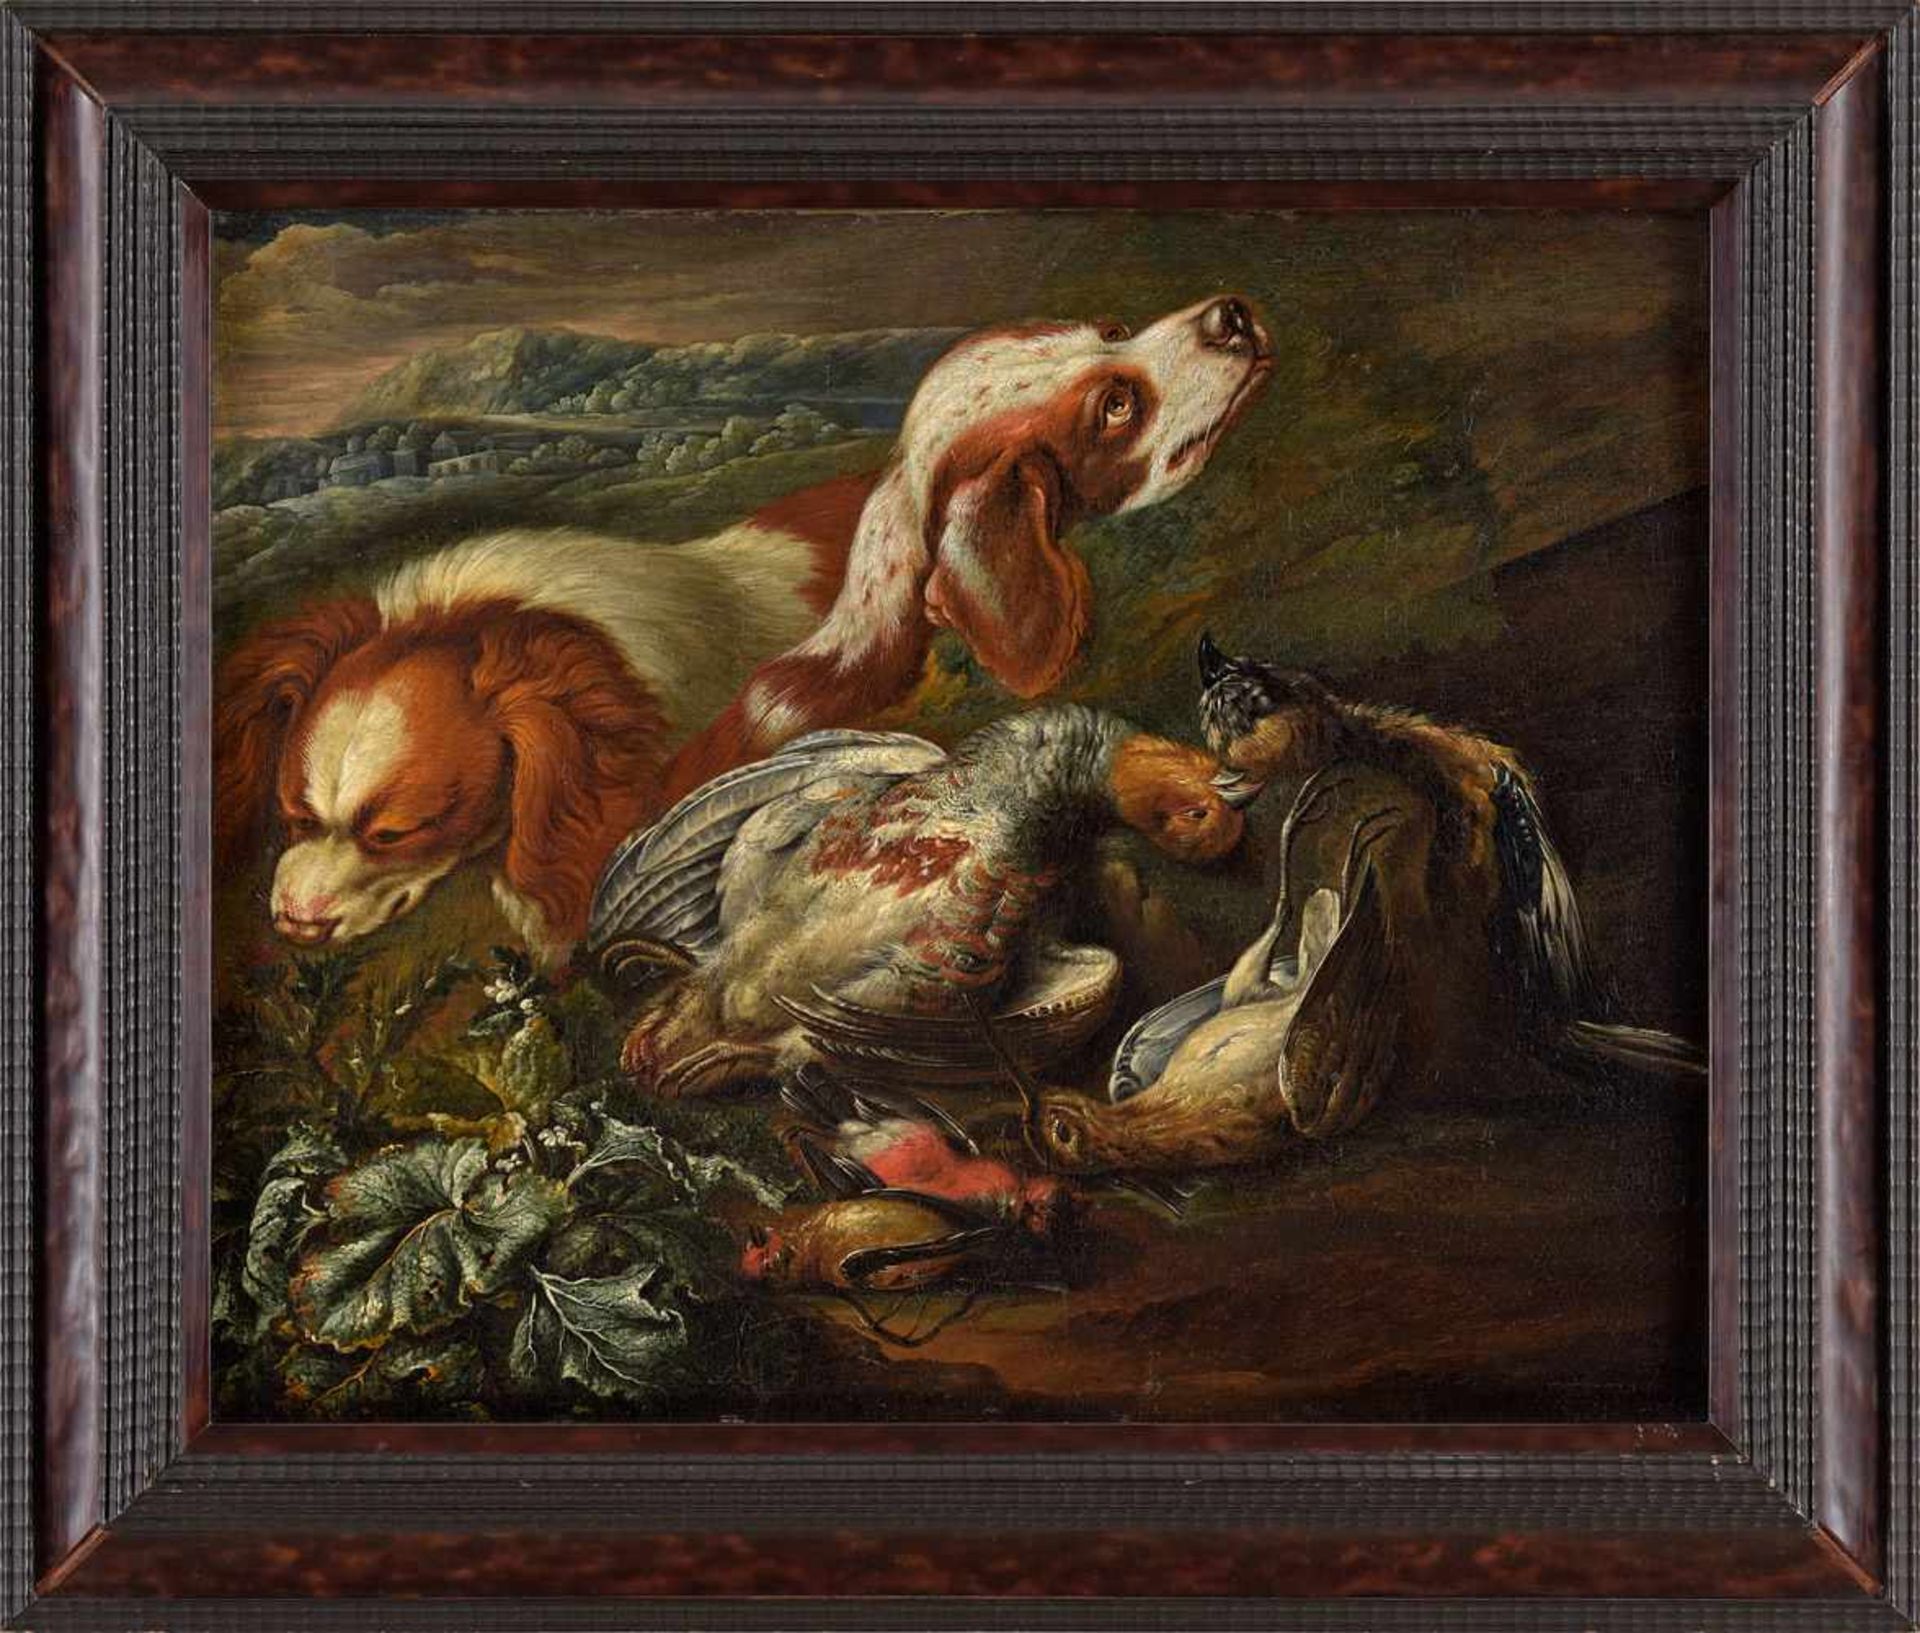 Italienischer Meister 17./18. Jhdt.Jagdstillleben mit Hunden.Öl/Lwd./doubl., 55 x 70 cm. - Bild 2 aus 3